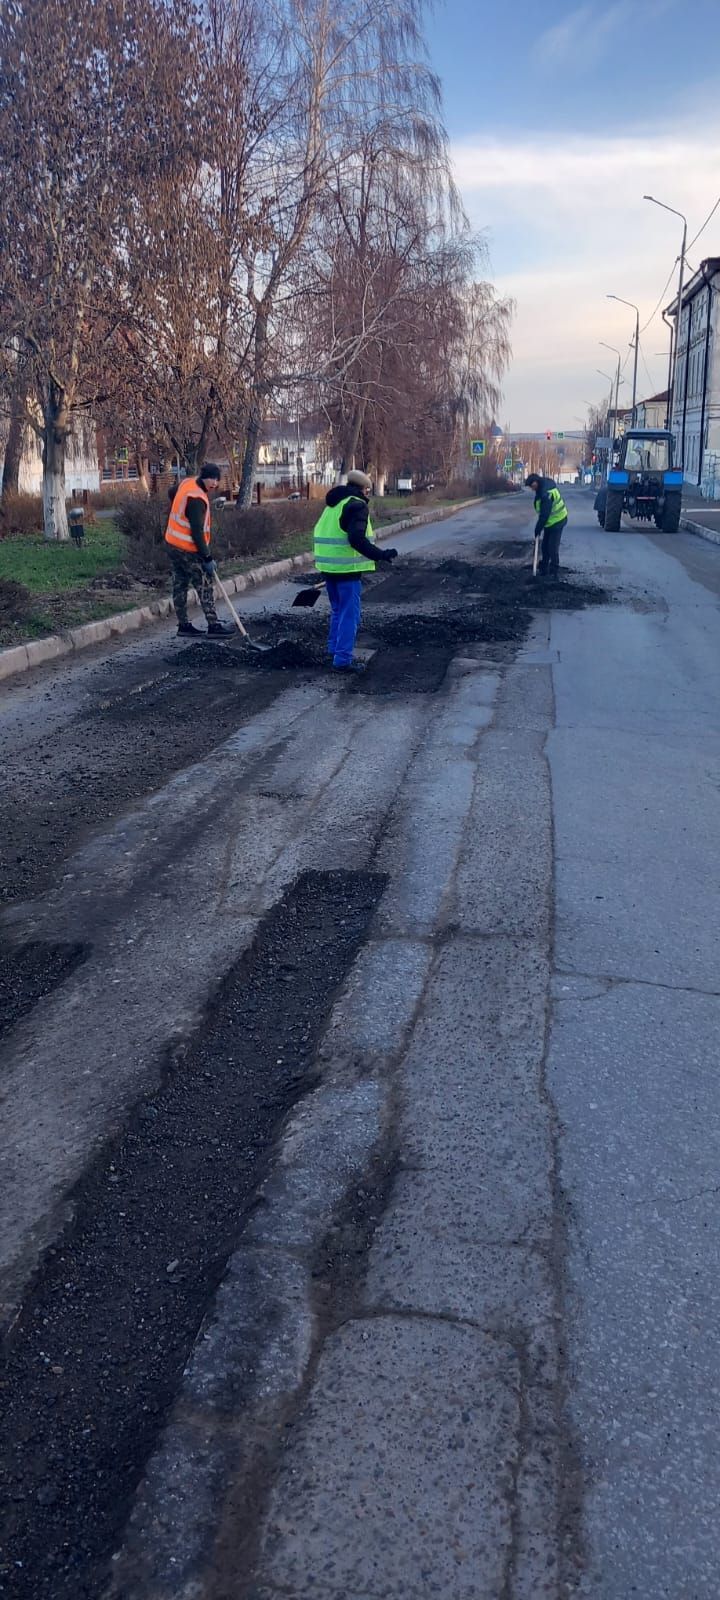 В этом сезоне планируется провести ямочный ремонт чистопольских дорог на площади около 3-х тысяч квадратных метров